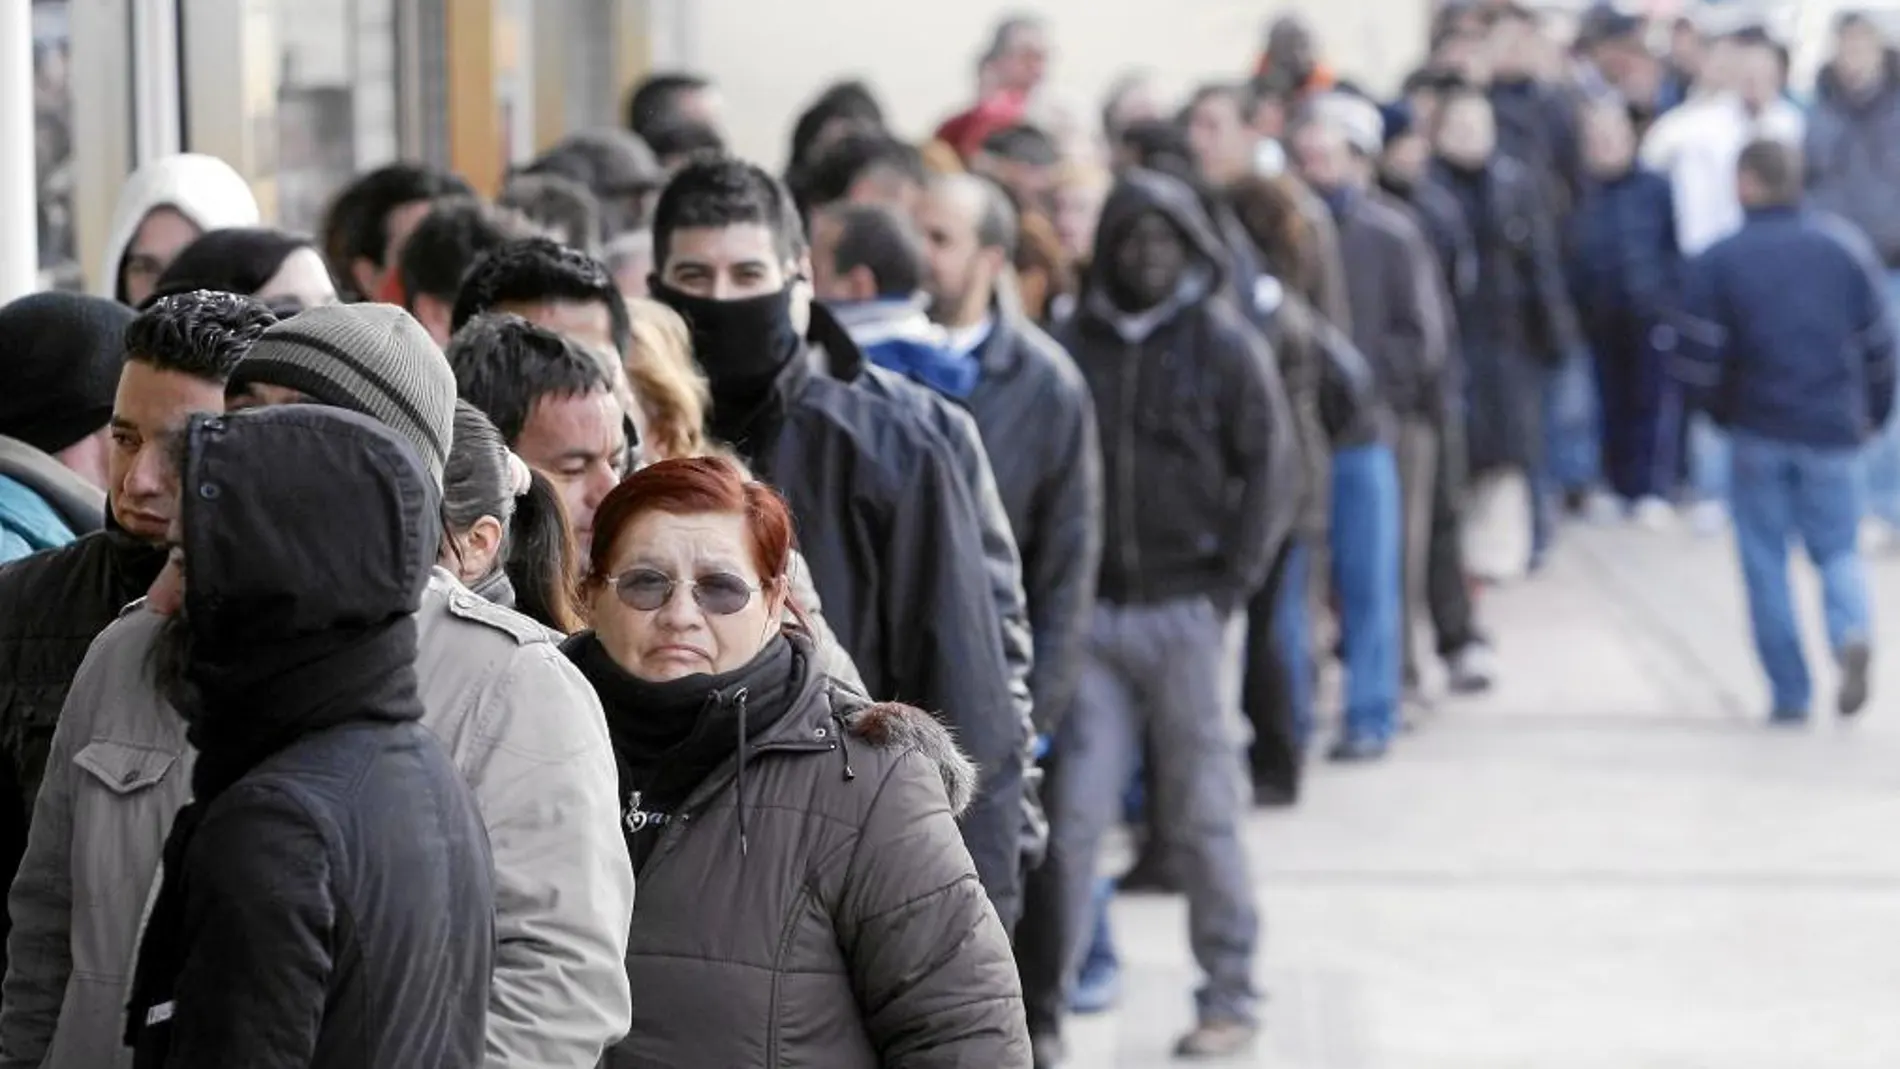 Imagen de archivo de decenas de personas esperando a ser atendidas por el Servicio Andaluz de Empleo